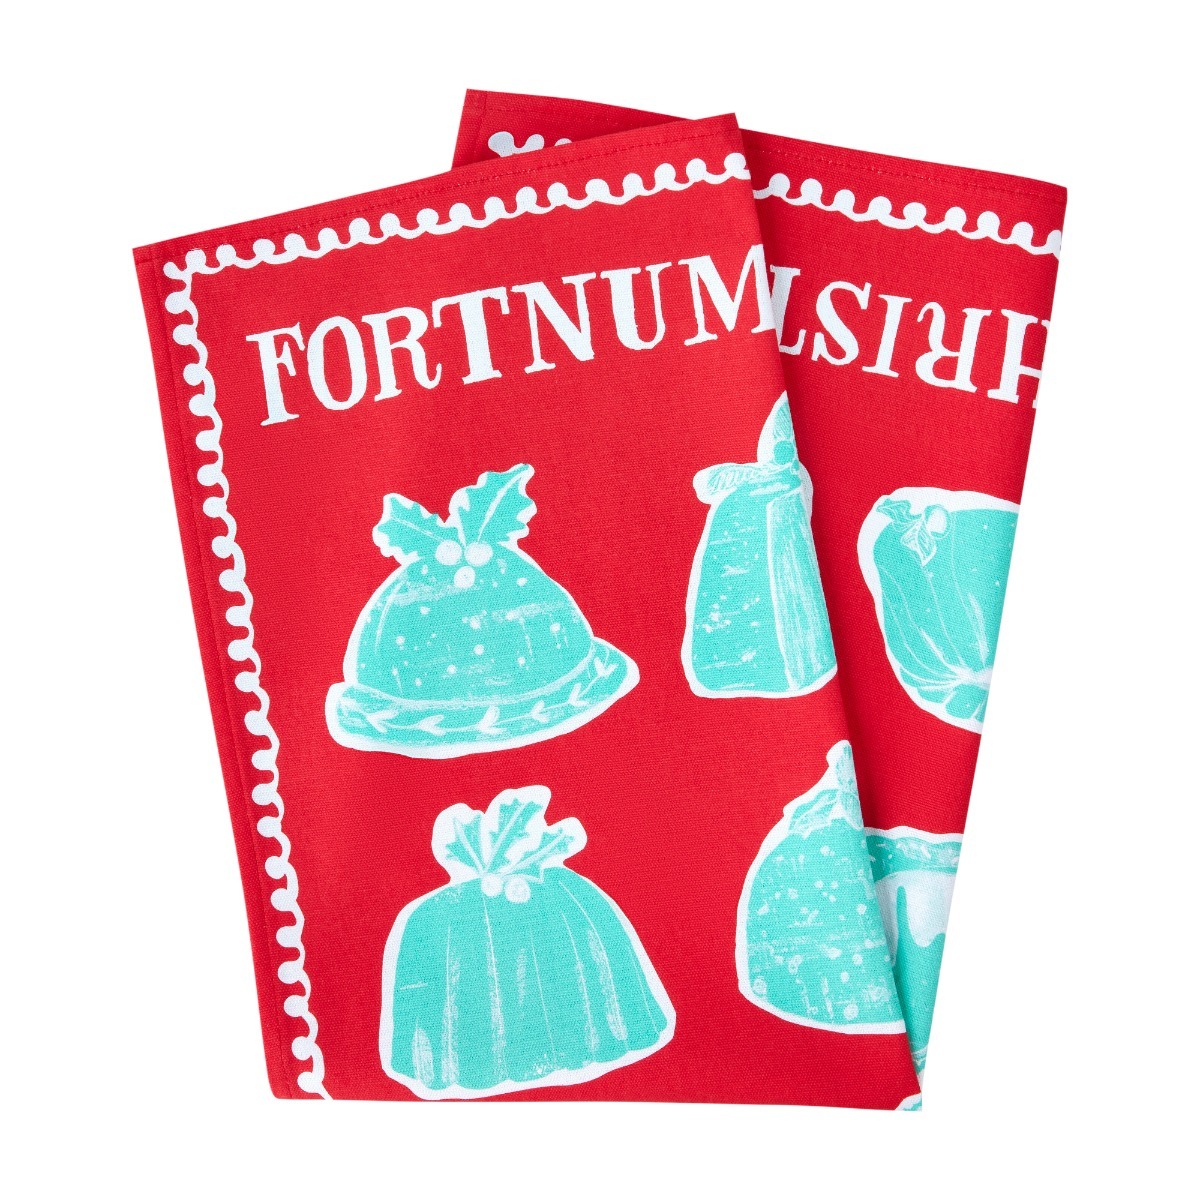 [ анонимность бесплатная доставка ]Fortnum&Mason four tonam&meison Рождество p DIN g чай полотенце кухня Cross Британия производства 